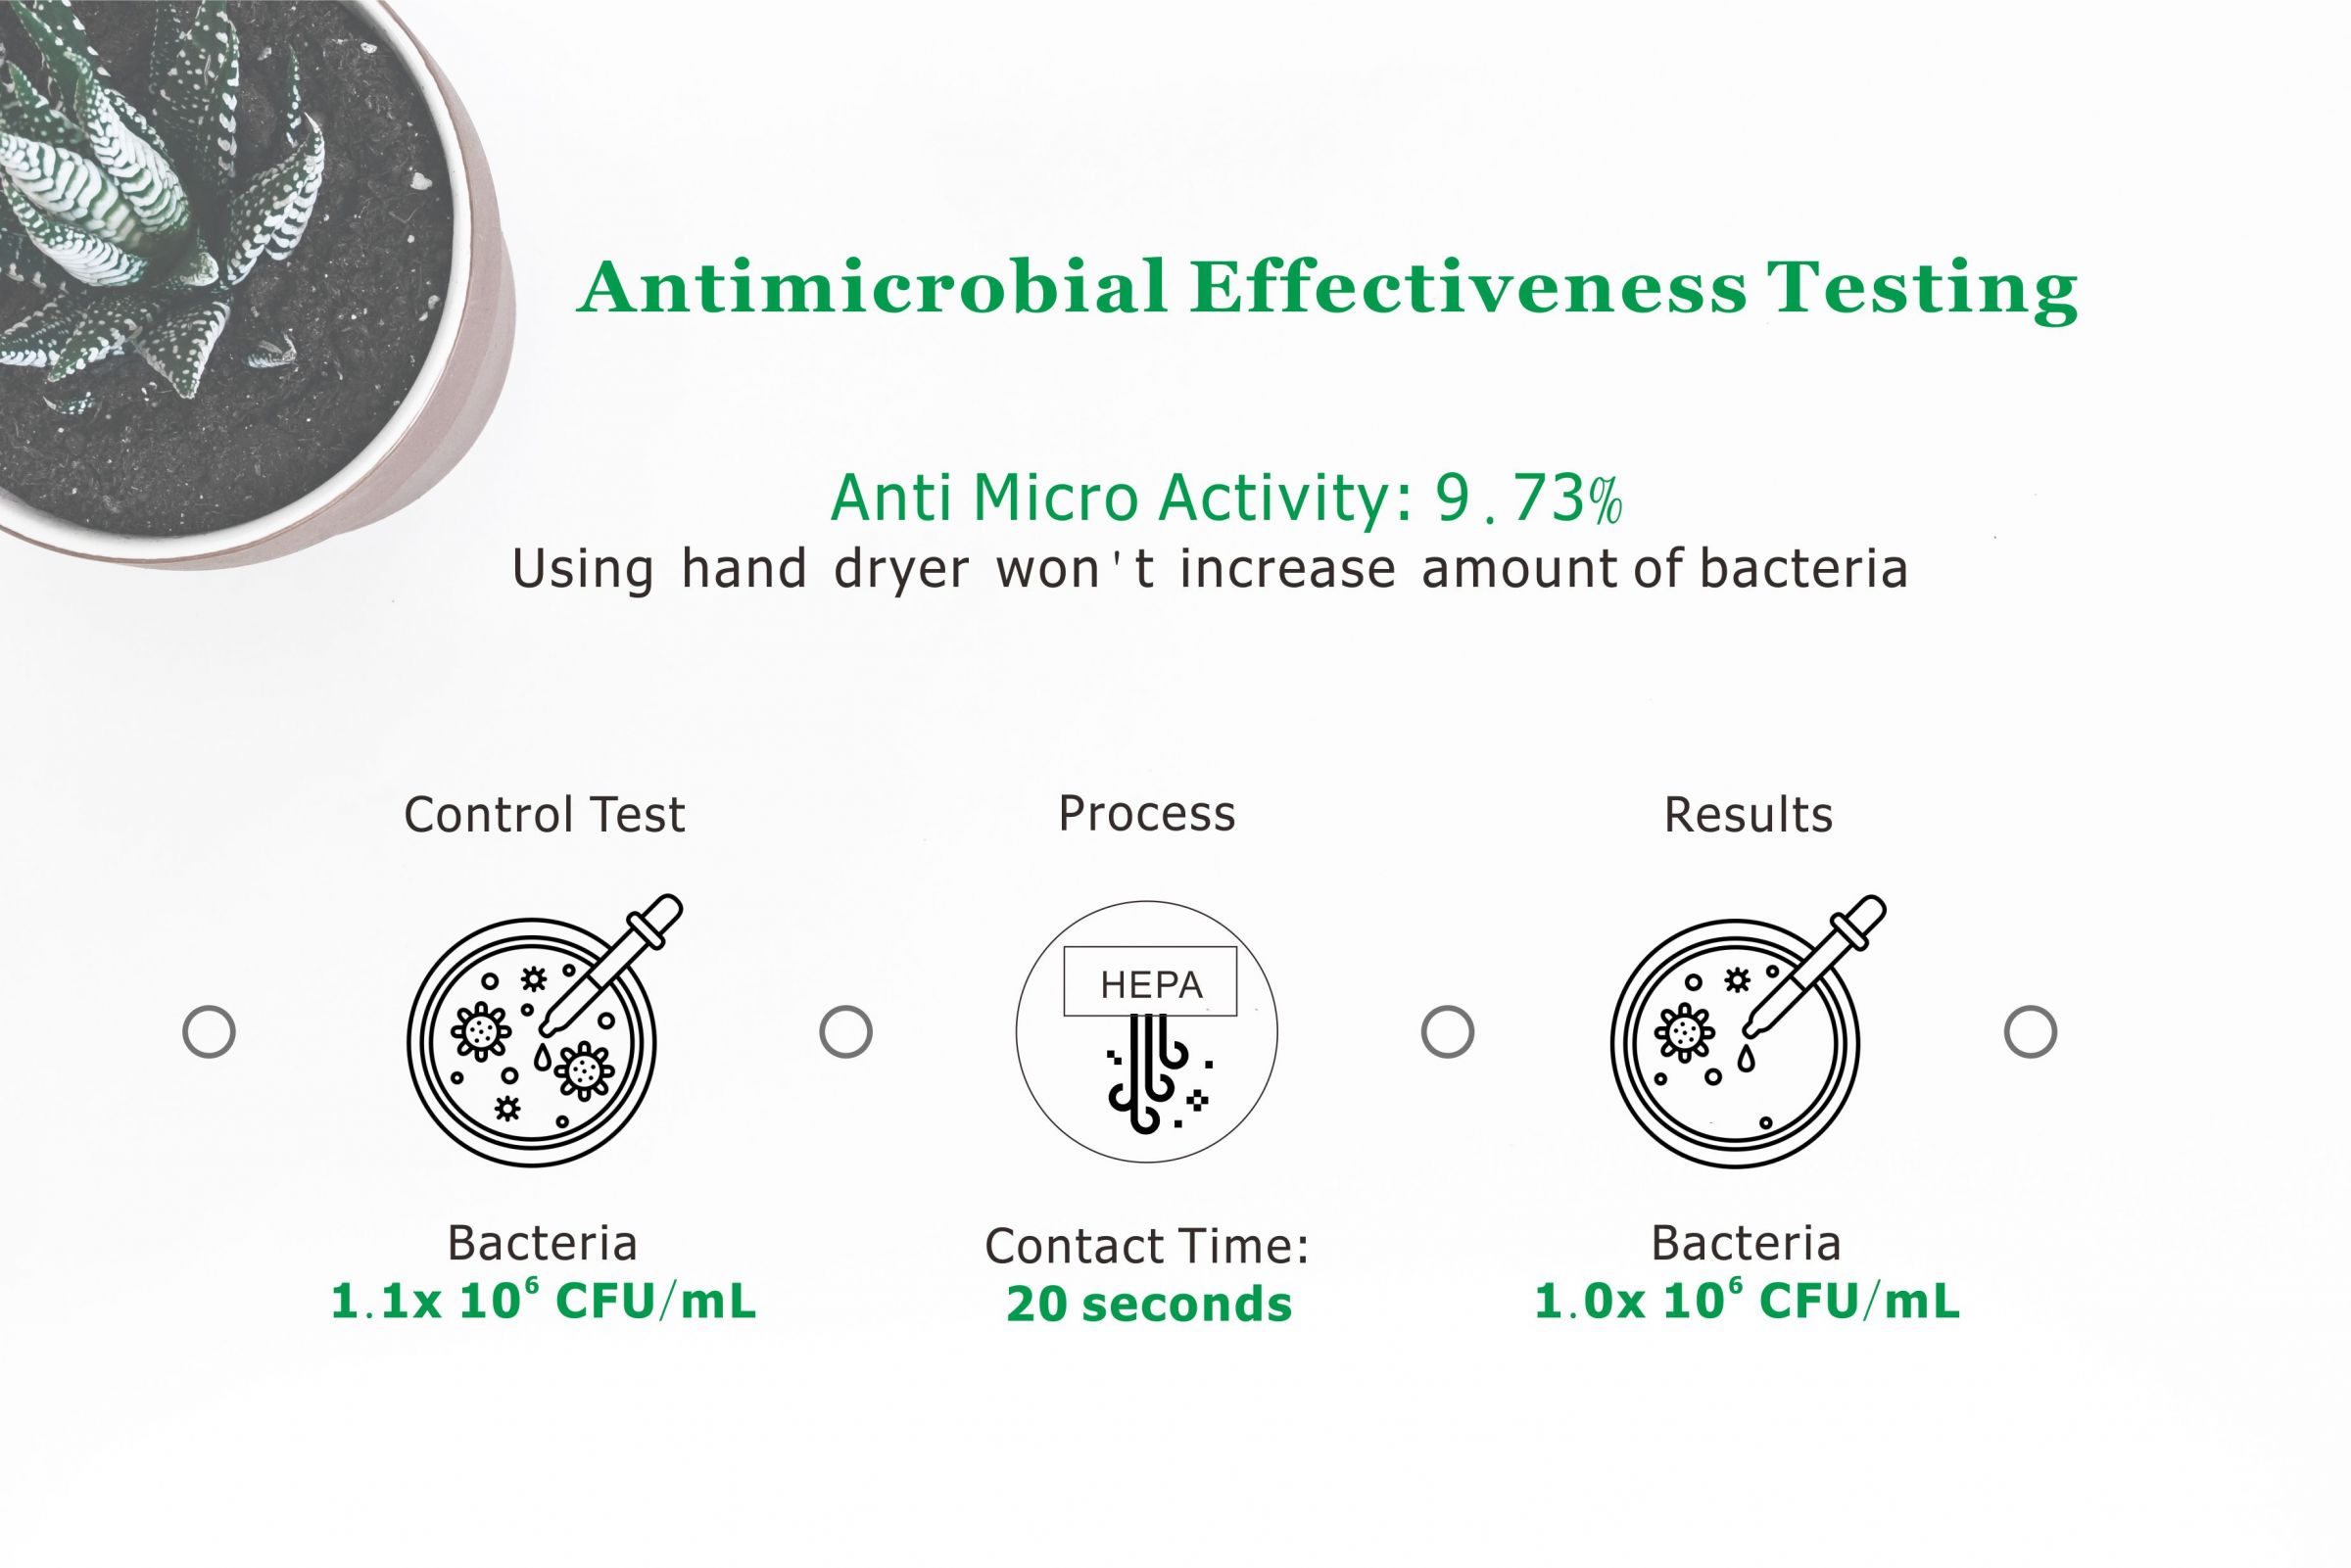 Test di efficacia antimicrobica